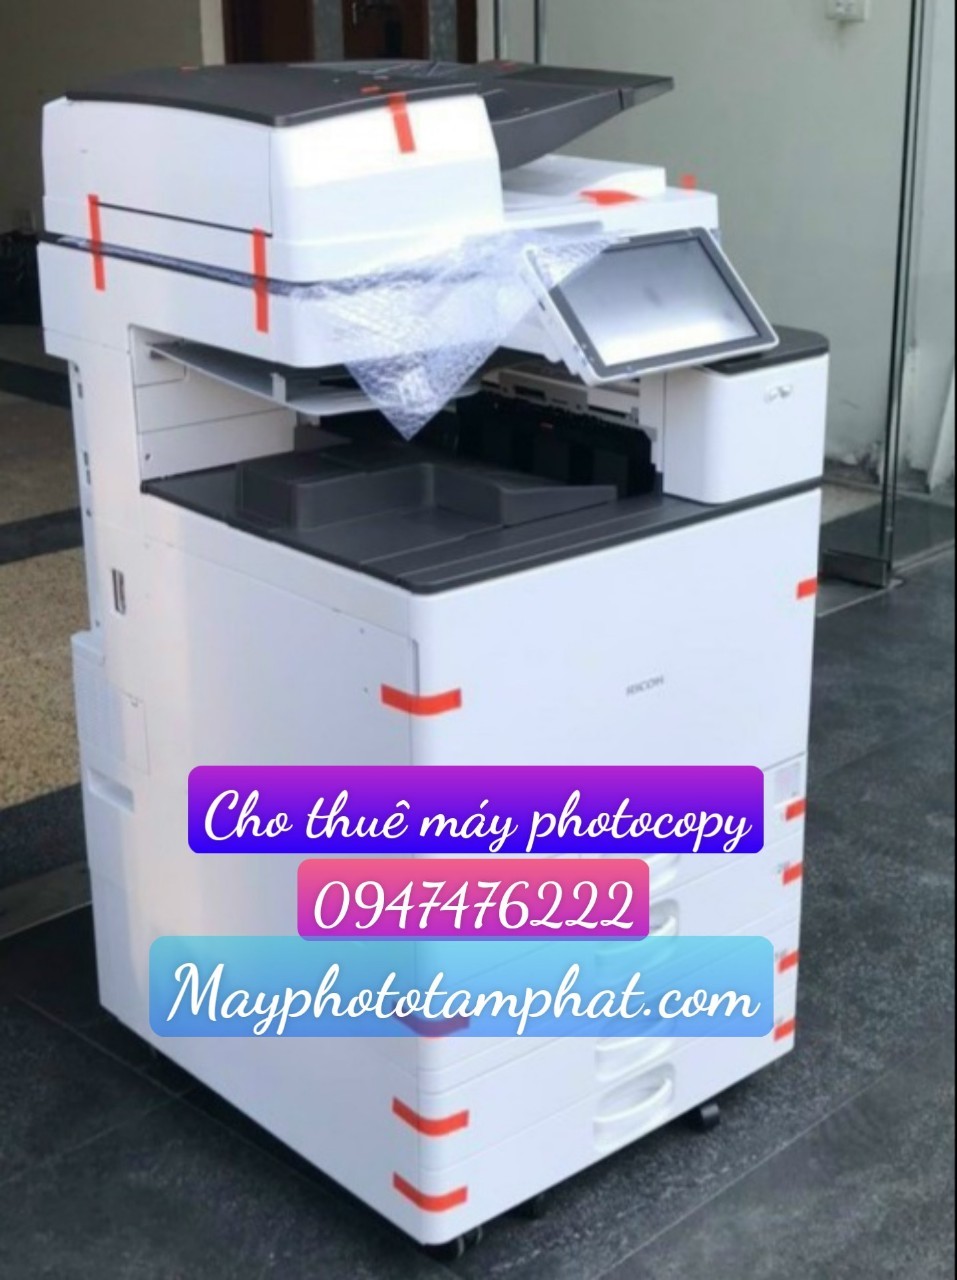 Dịch vụ cho thuê máy photocopy giá rẻ tại Thái Nguyên.